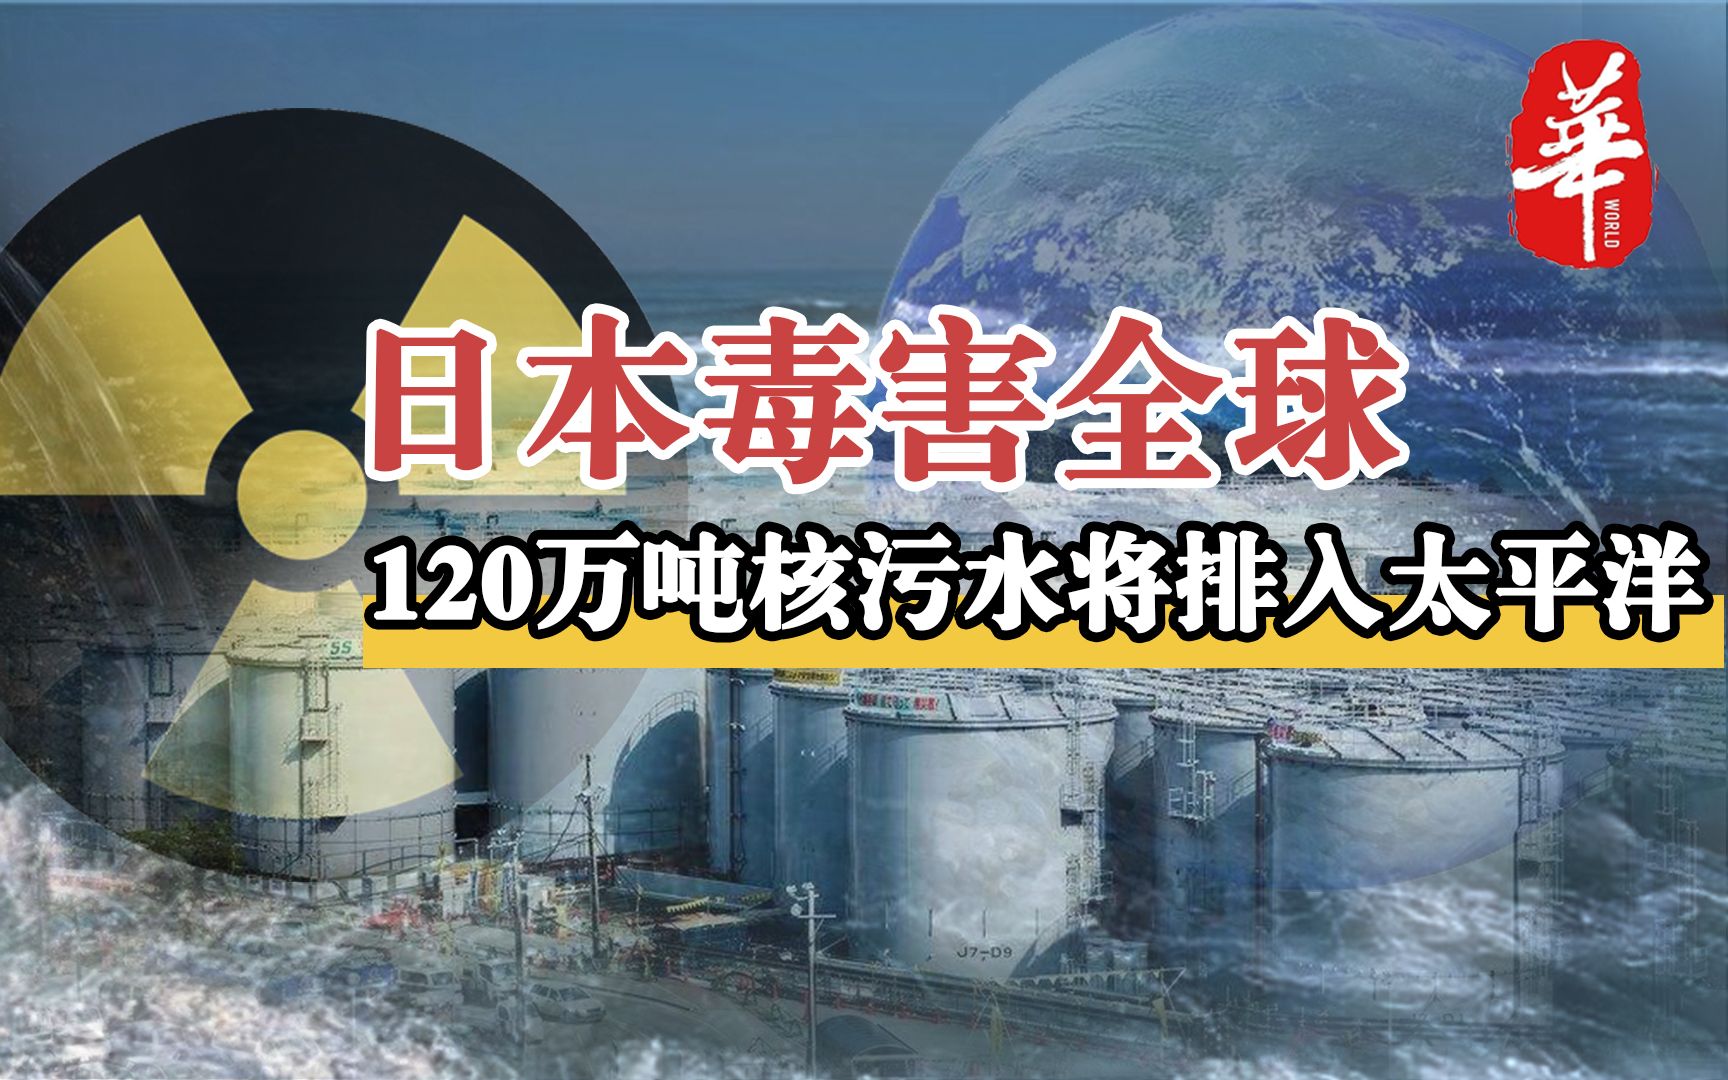 日本要把120万吨核污水排入太平洋,后果会有多严重?